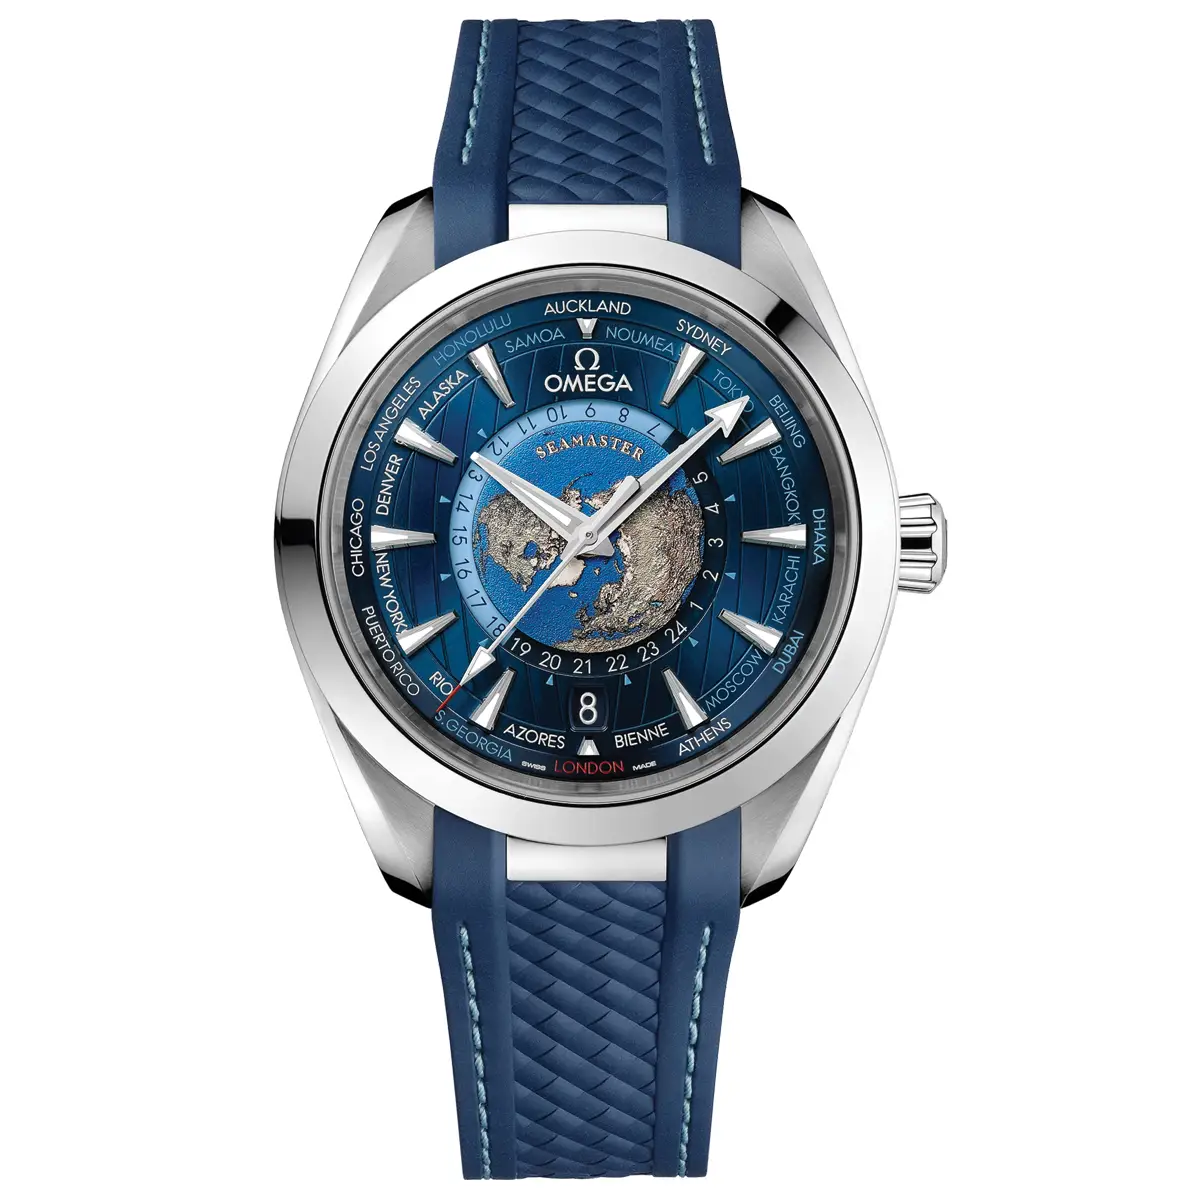 Đồng hồ Omega Seamaster Aqua Terra GMT Worldtimer 220.12.43.22.03.001 mặt số màu xanh. Thiết kế lộ cơ. Dây đeo bằng cao su. Thân vỏ bằng thép.